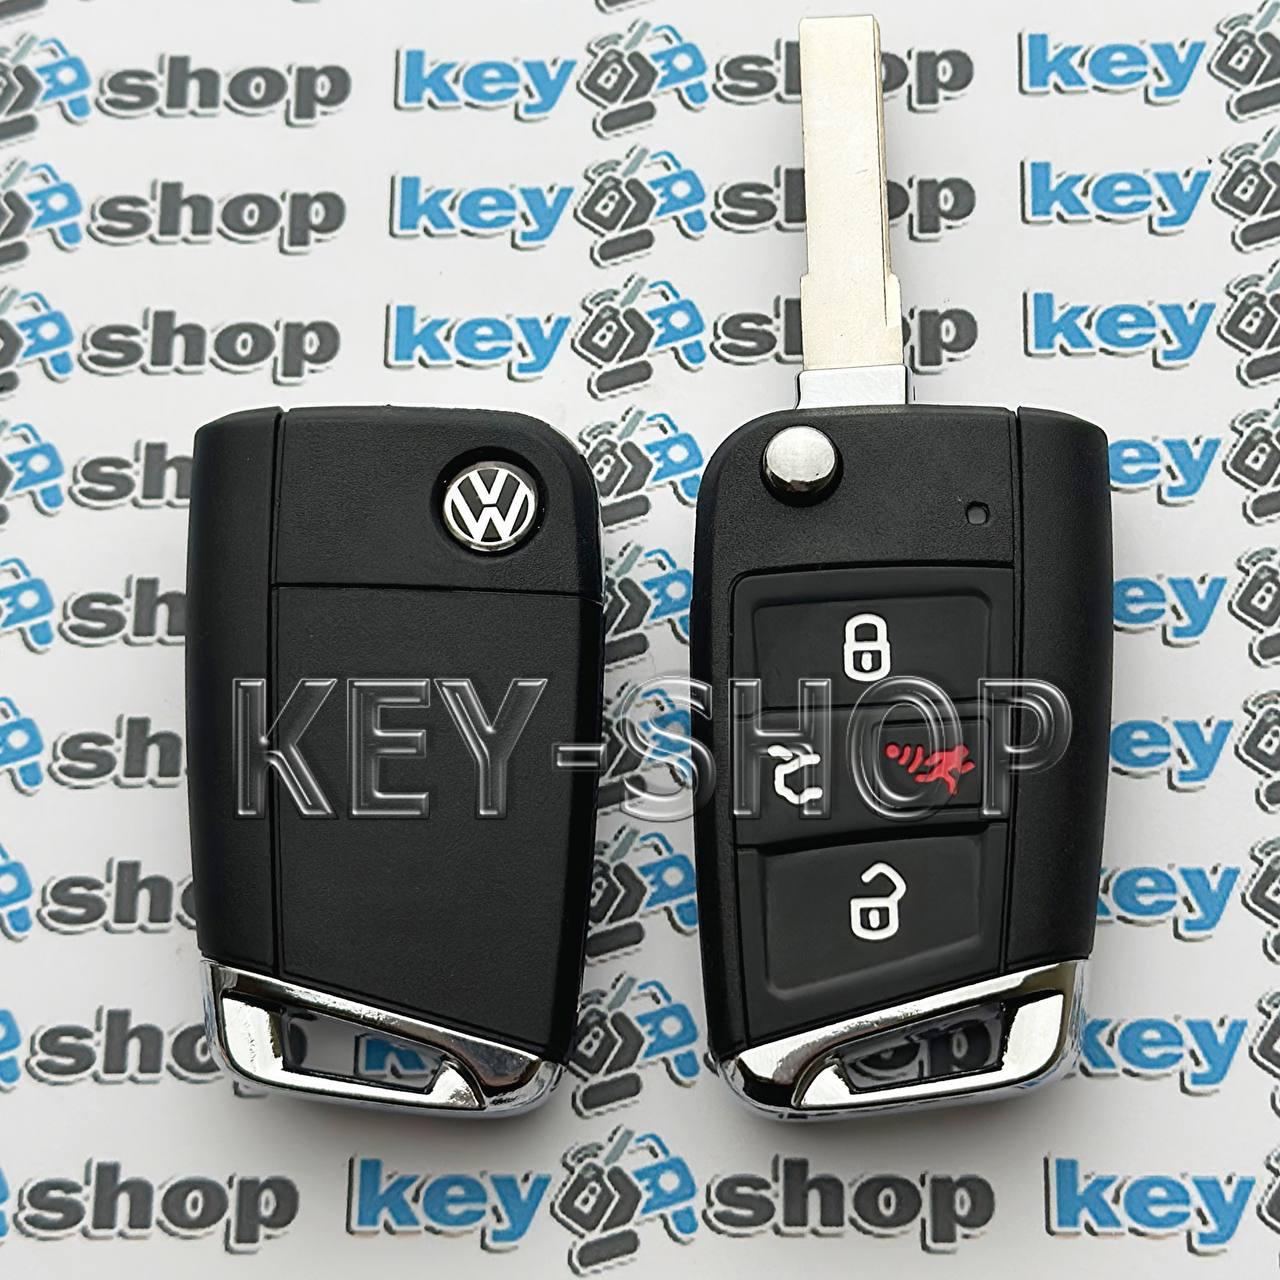 Викидний ключ Volkswagen Golf GTI 2015-2019 (Фольксваген) 3+1 кнопки, PN : 5G0 959 752 BE, чiп MQB 48 /315 MHz, лезо HU66